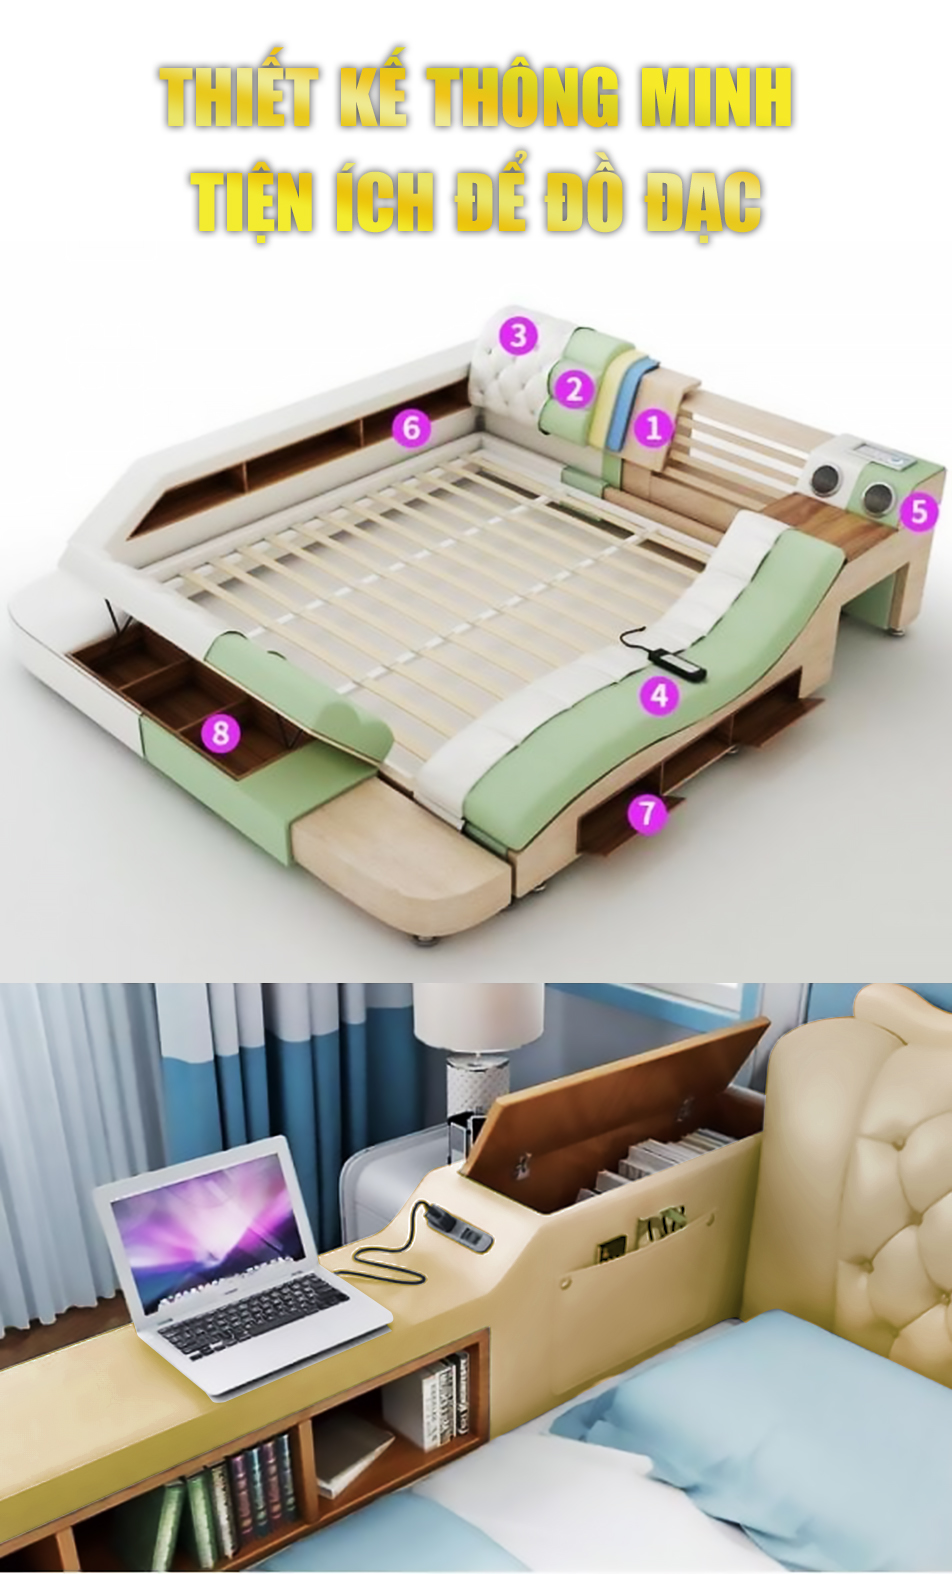 giường massage haruko với tiện ích để đồ đạc thông minh